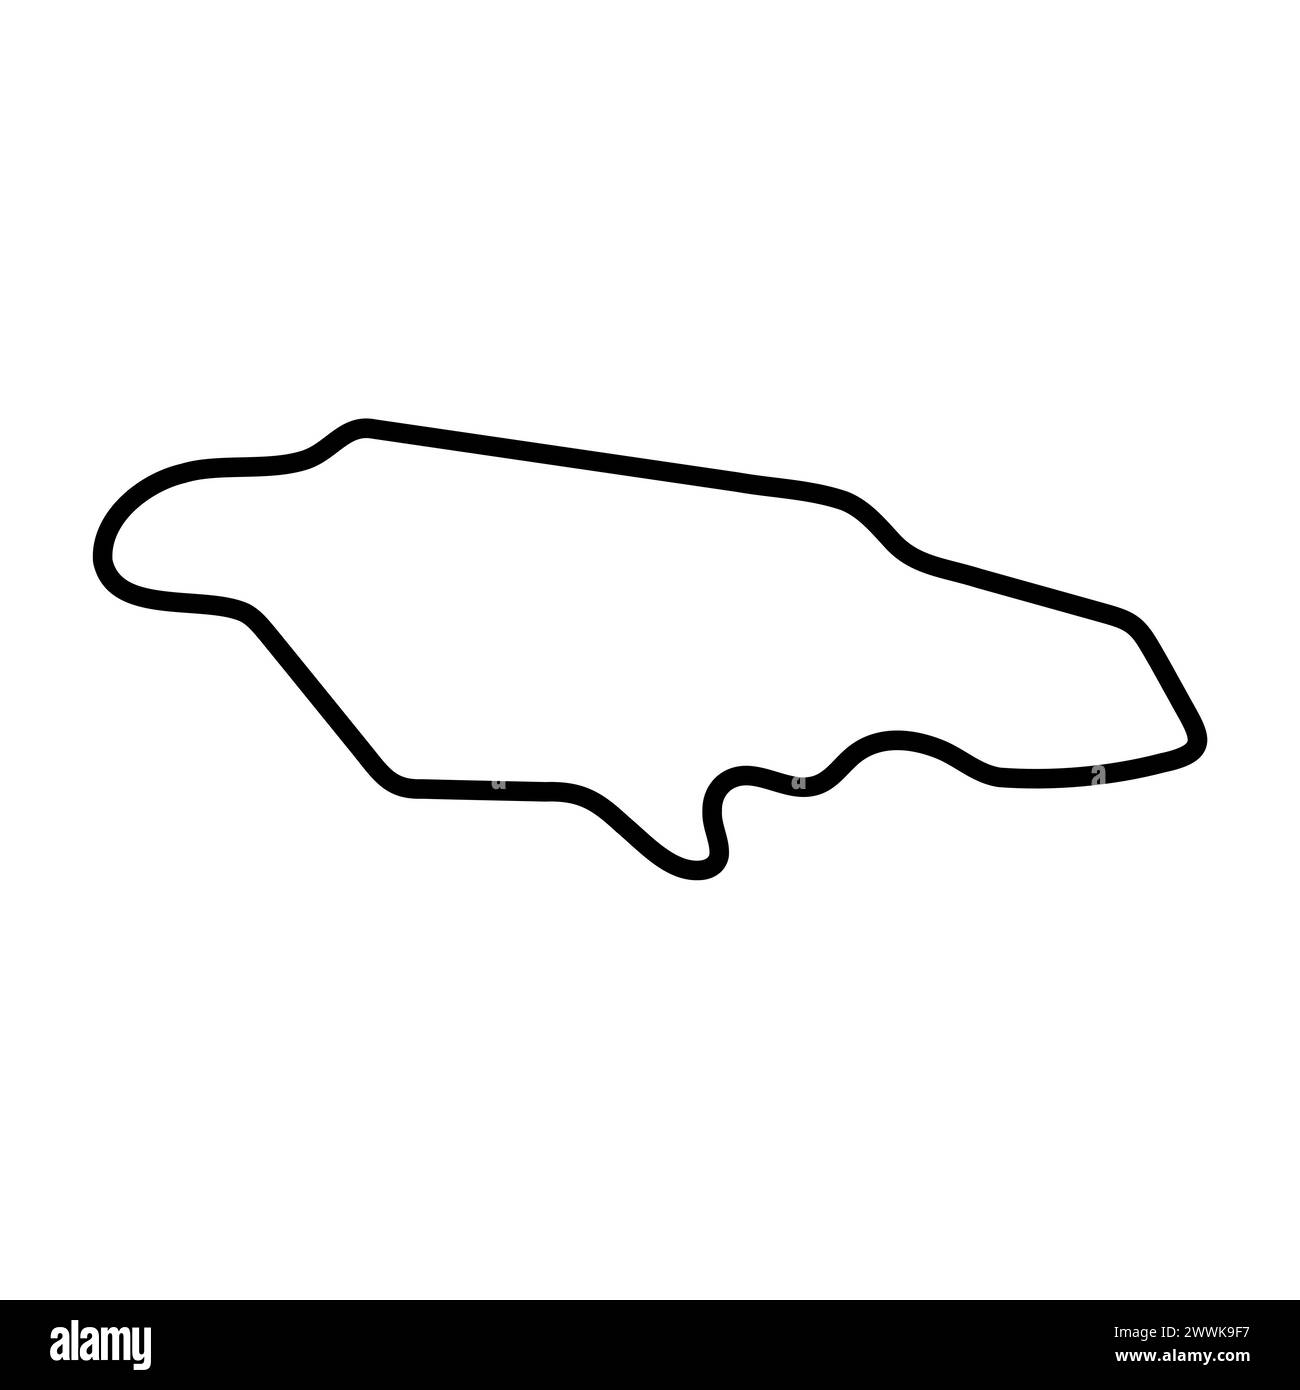 Carte simplifiée du pays de la Jamaïque. Contour noir épais. Icône vectorielle simple Illustration de Vecteur